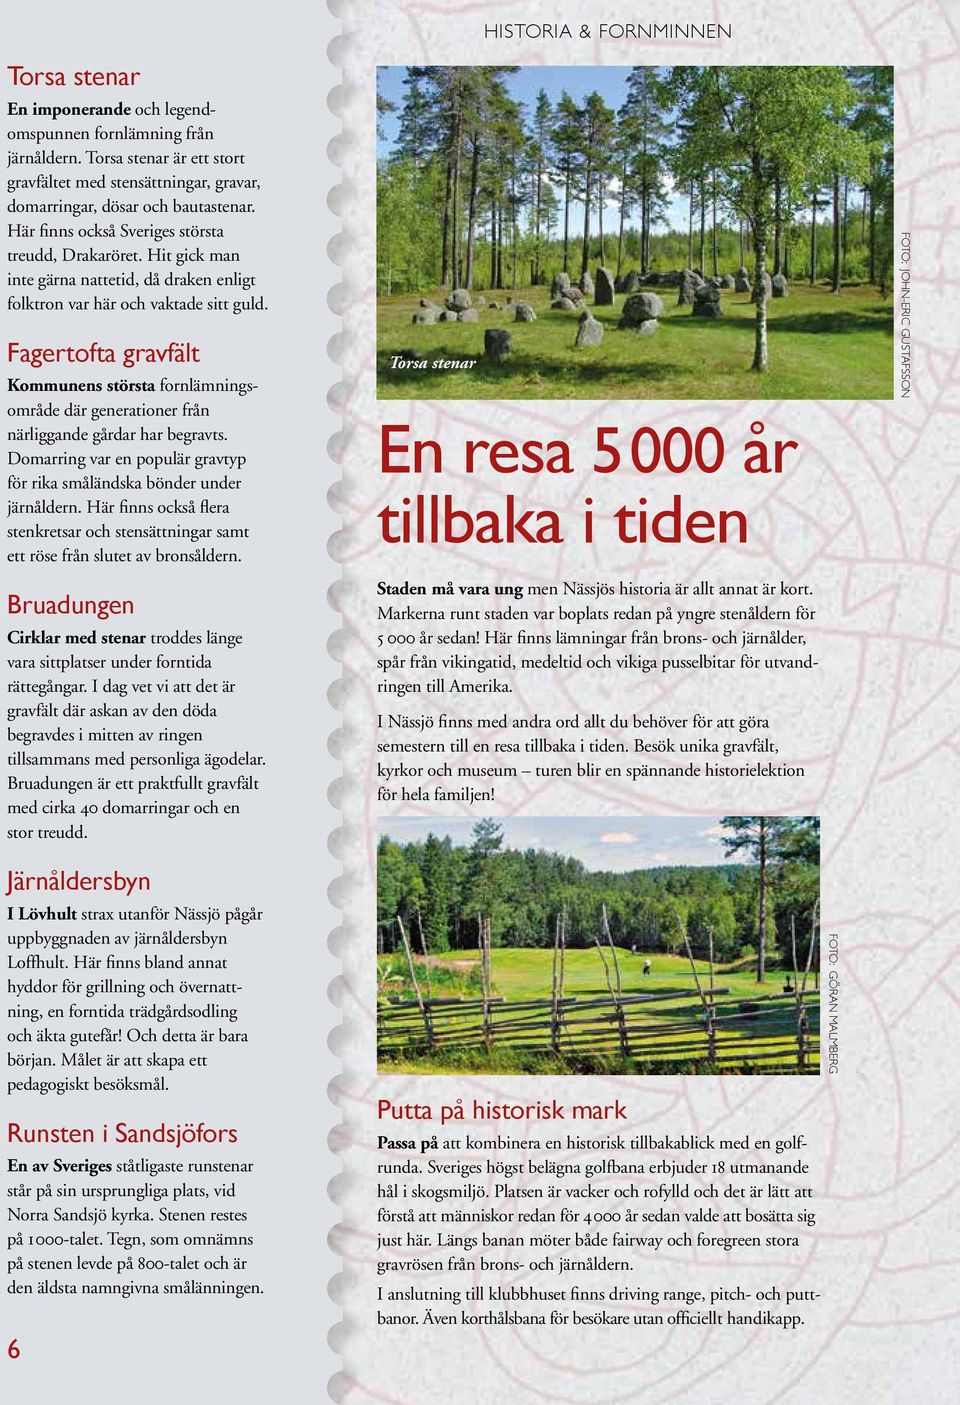 Fagertofta gravfält Kommunens största fornlämningsområde där generationer från närliggande gårdar har begravts. Domarring var en populär gravtyp för rika småländska bönder under järnåldern.